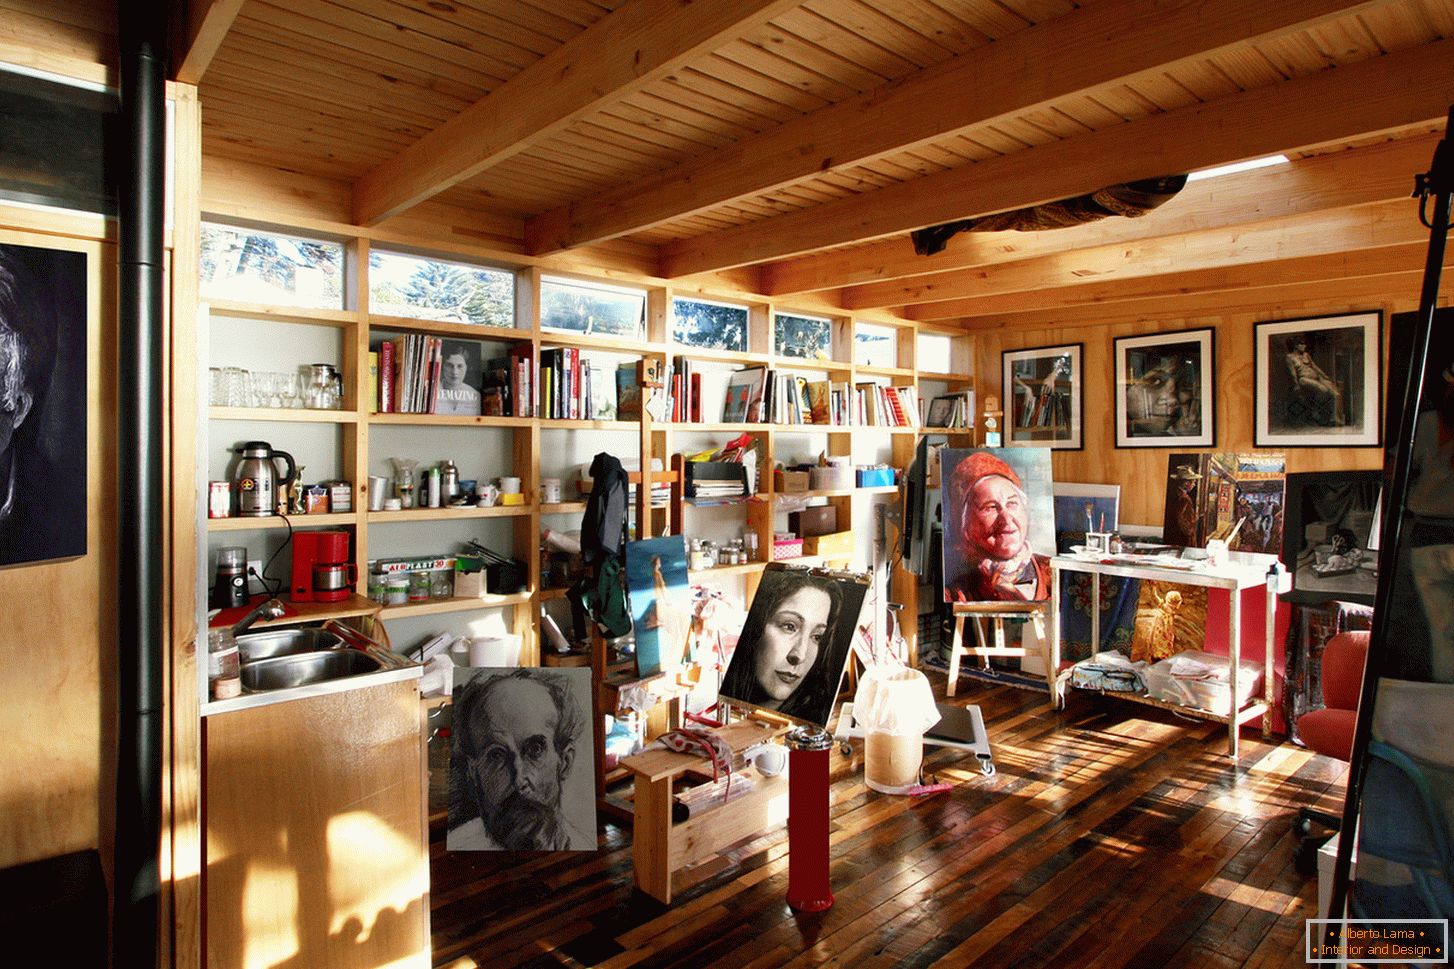 Studio d'arte в современном доме